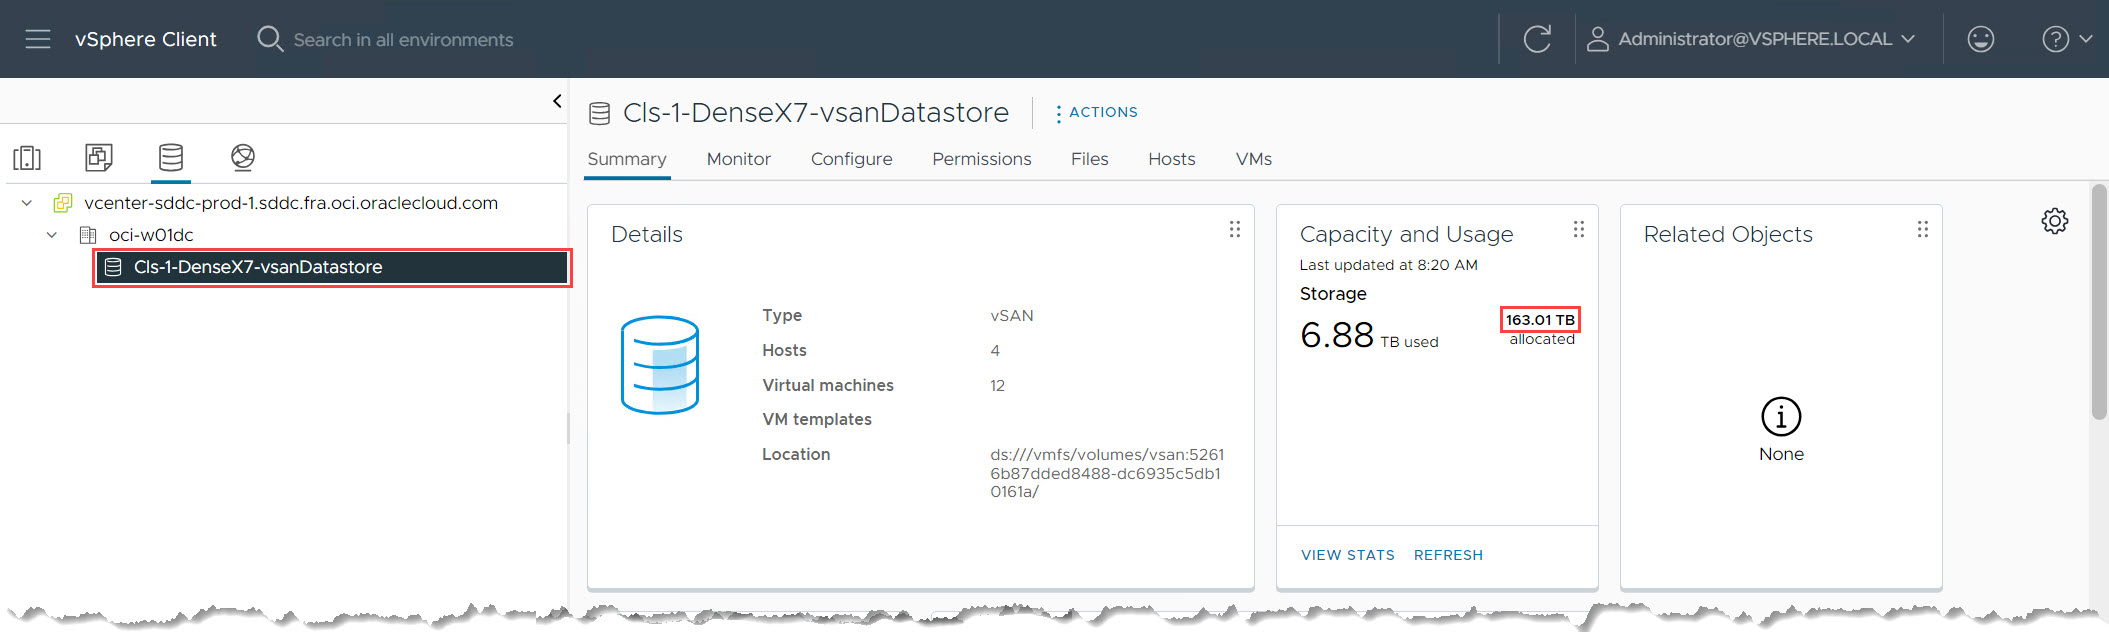 Verificar capacidad de almacén de datos de vSAN